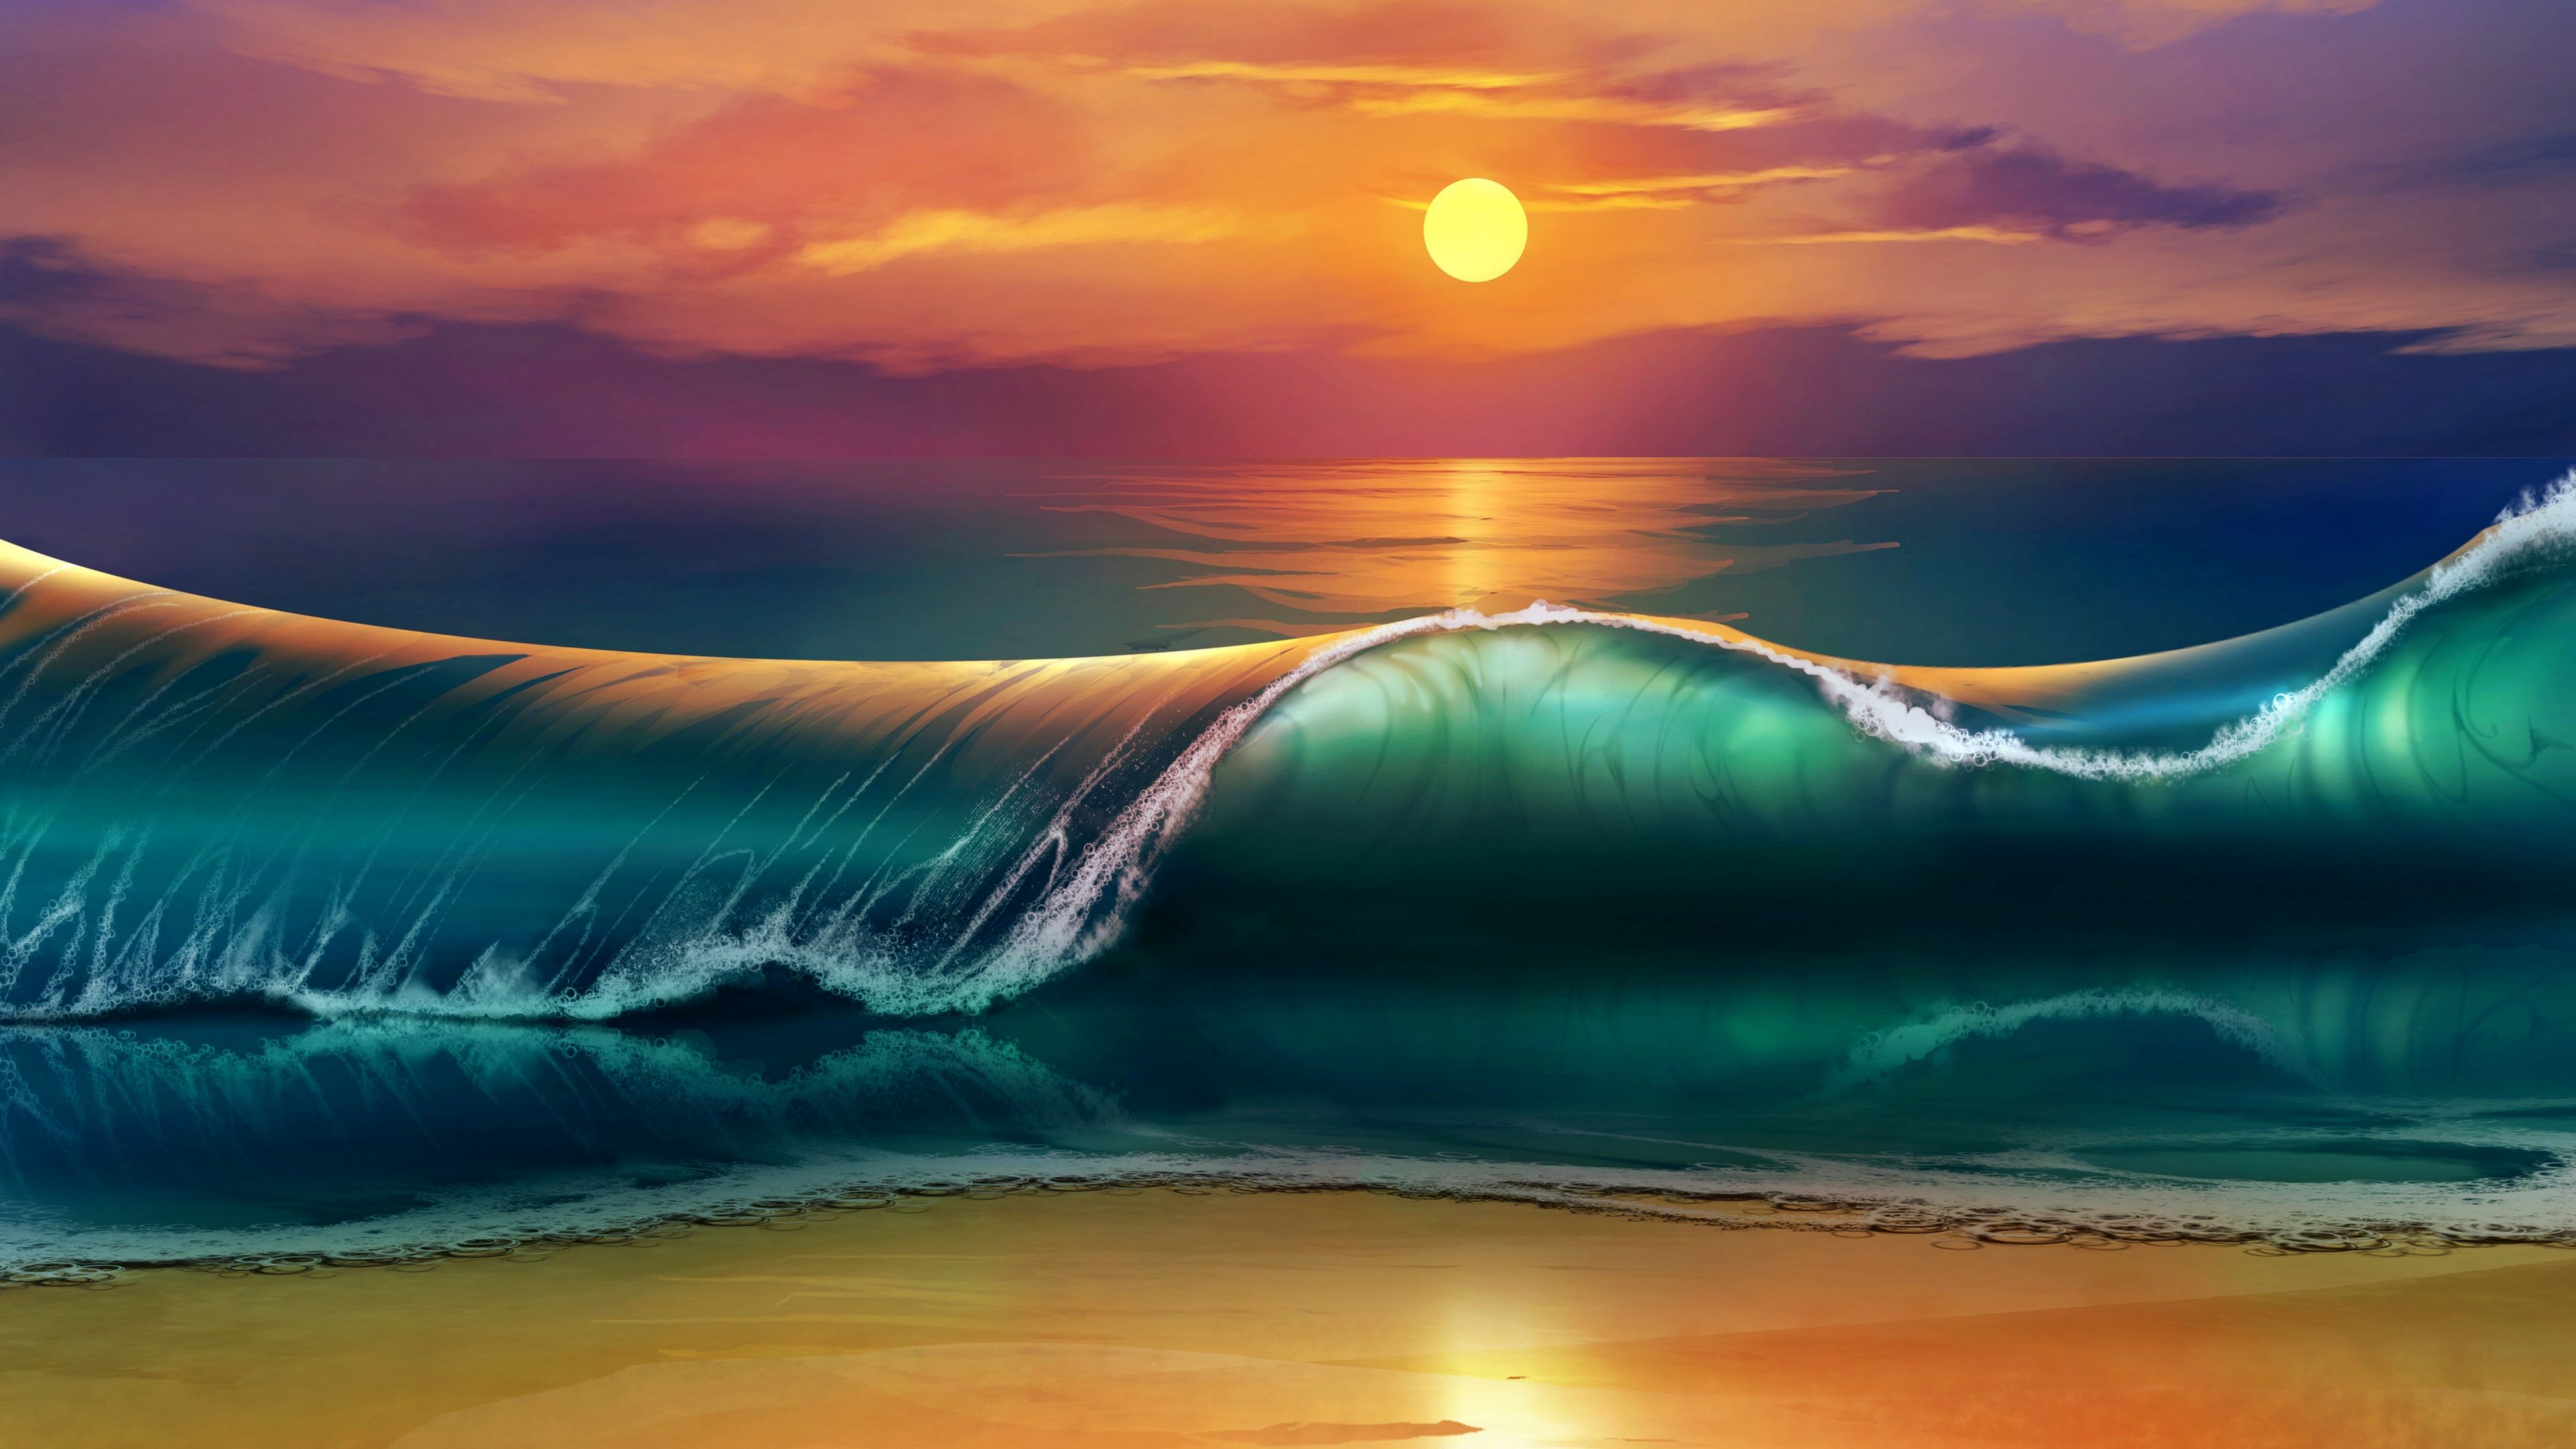 Download Wallpaper 3840x2160 Art Sunset Beach Sea Waves 4k Uhd 169